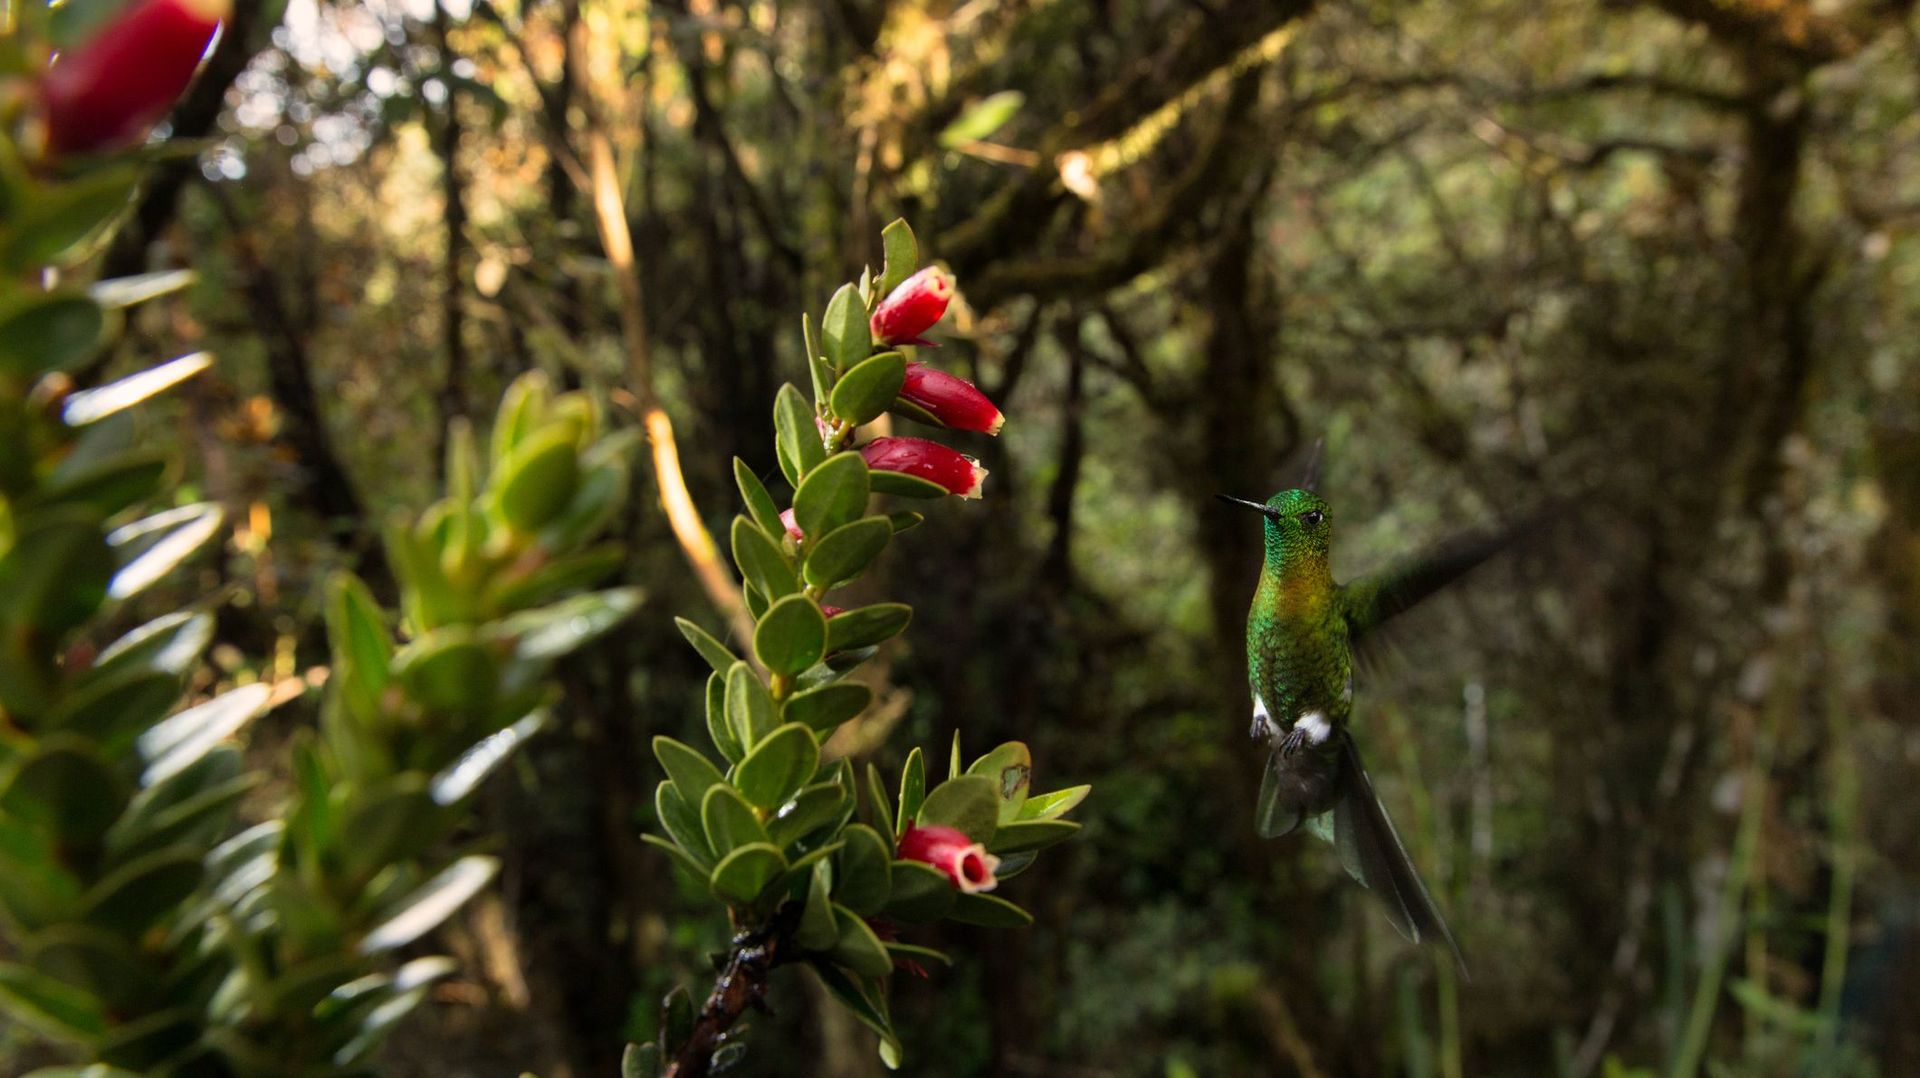 En Colombie, des scientifiques découvrent de nouvelles espèces en territoire inconnu